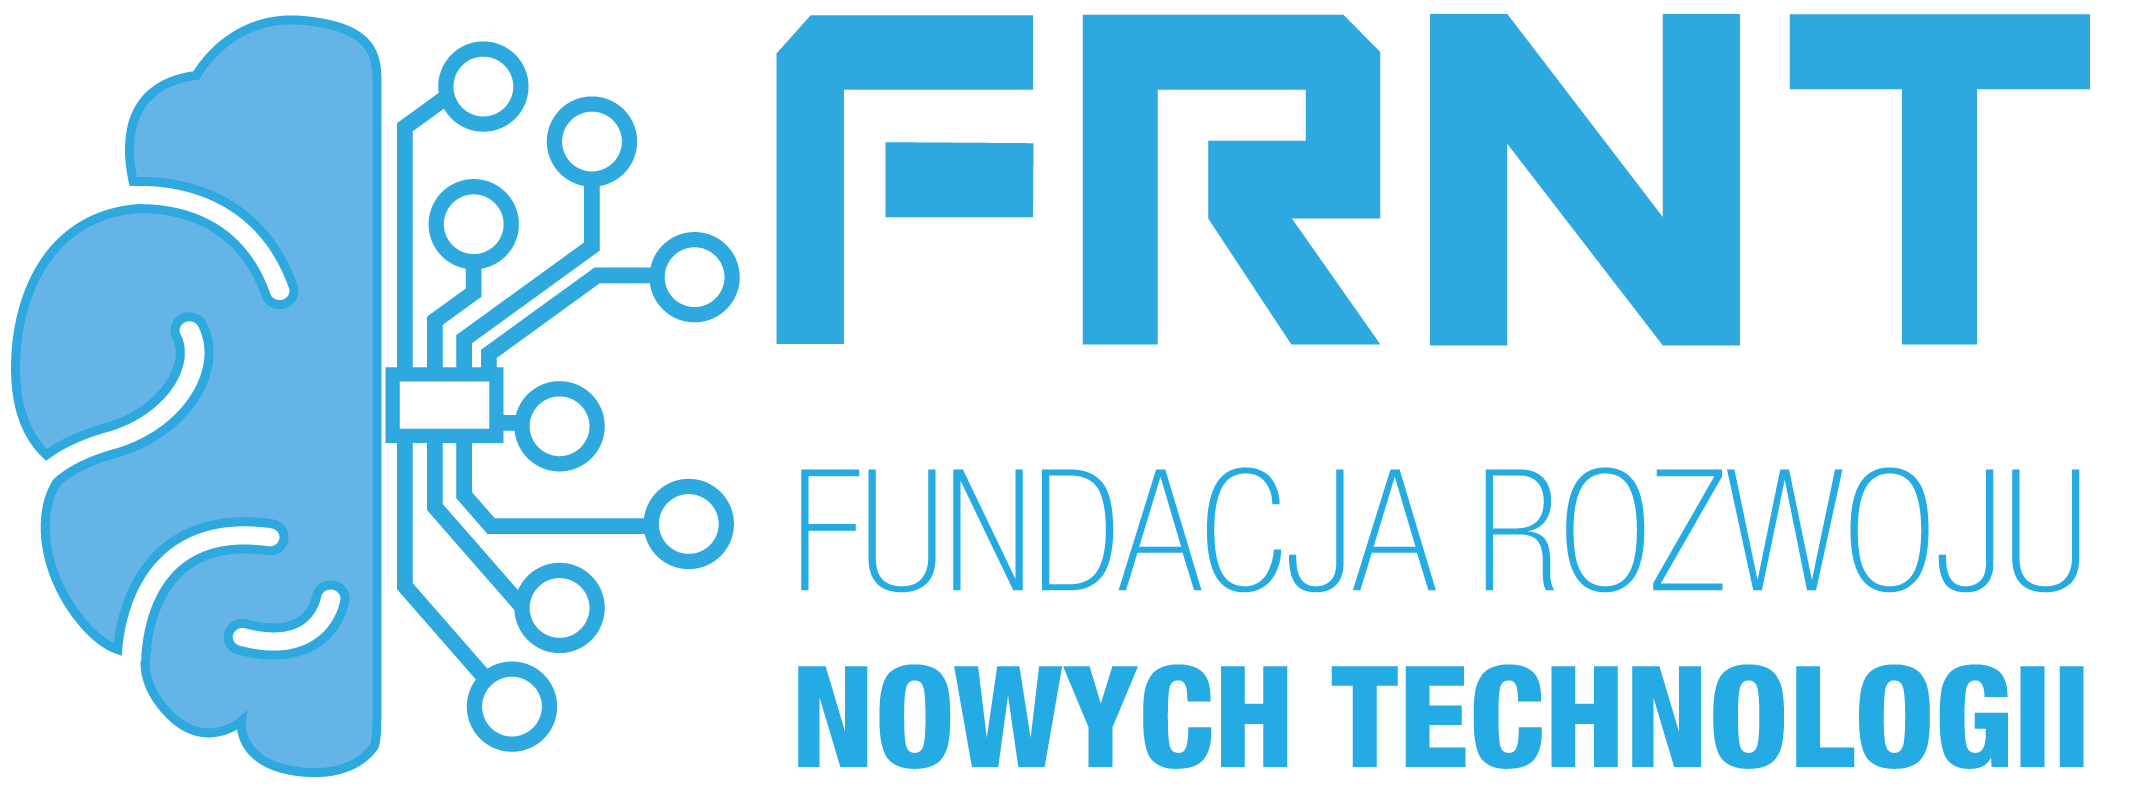 Logo Fundacja Rozwoju Nowych Technologii